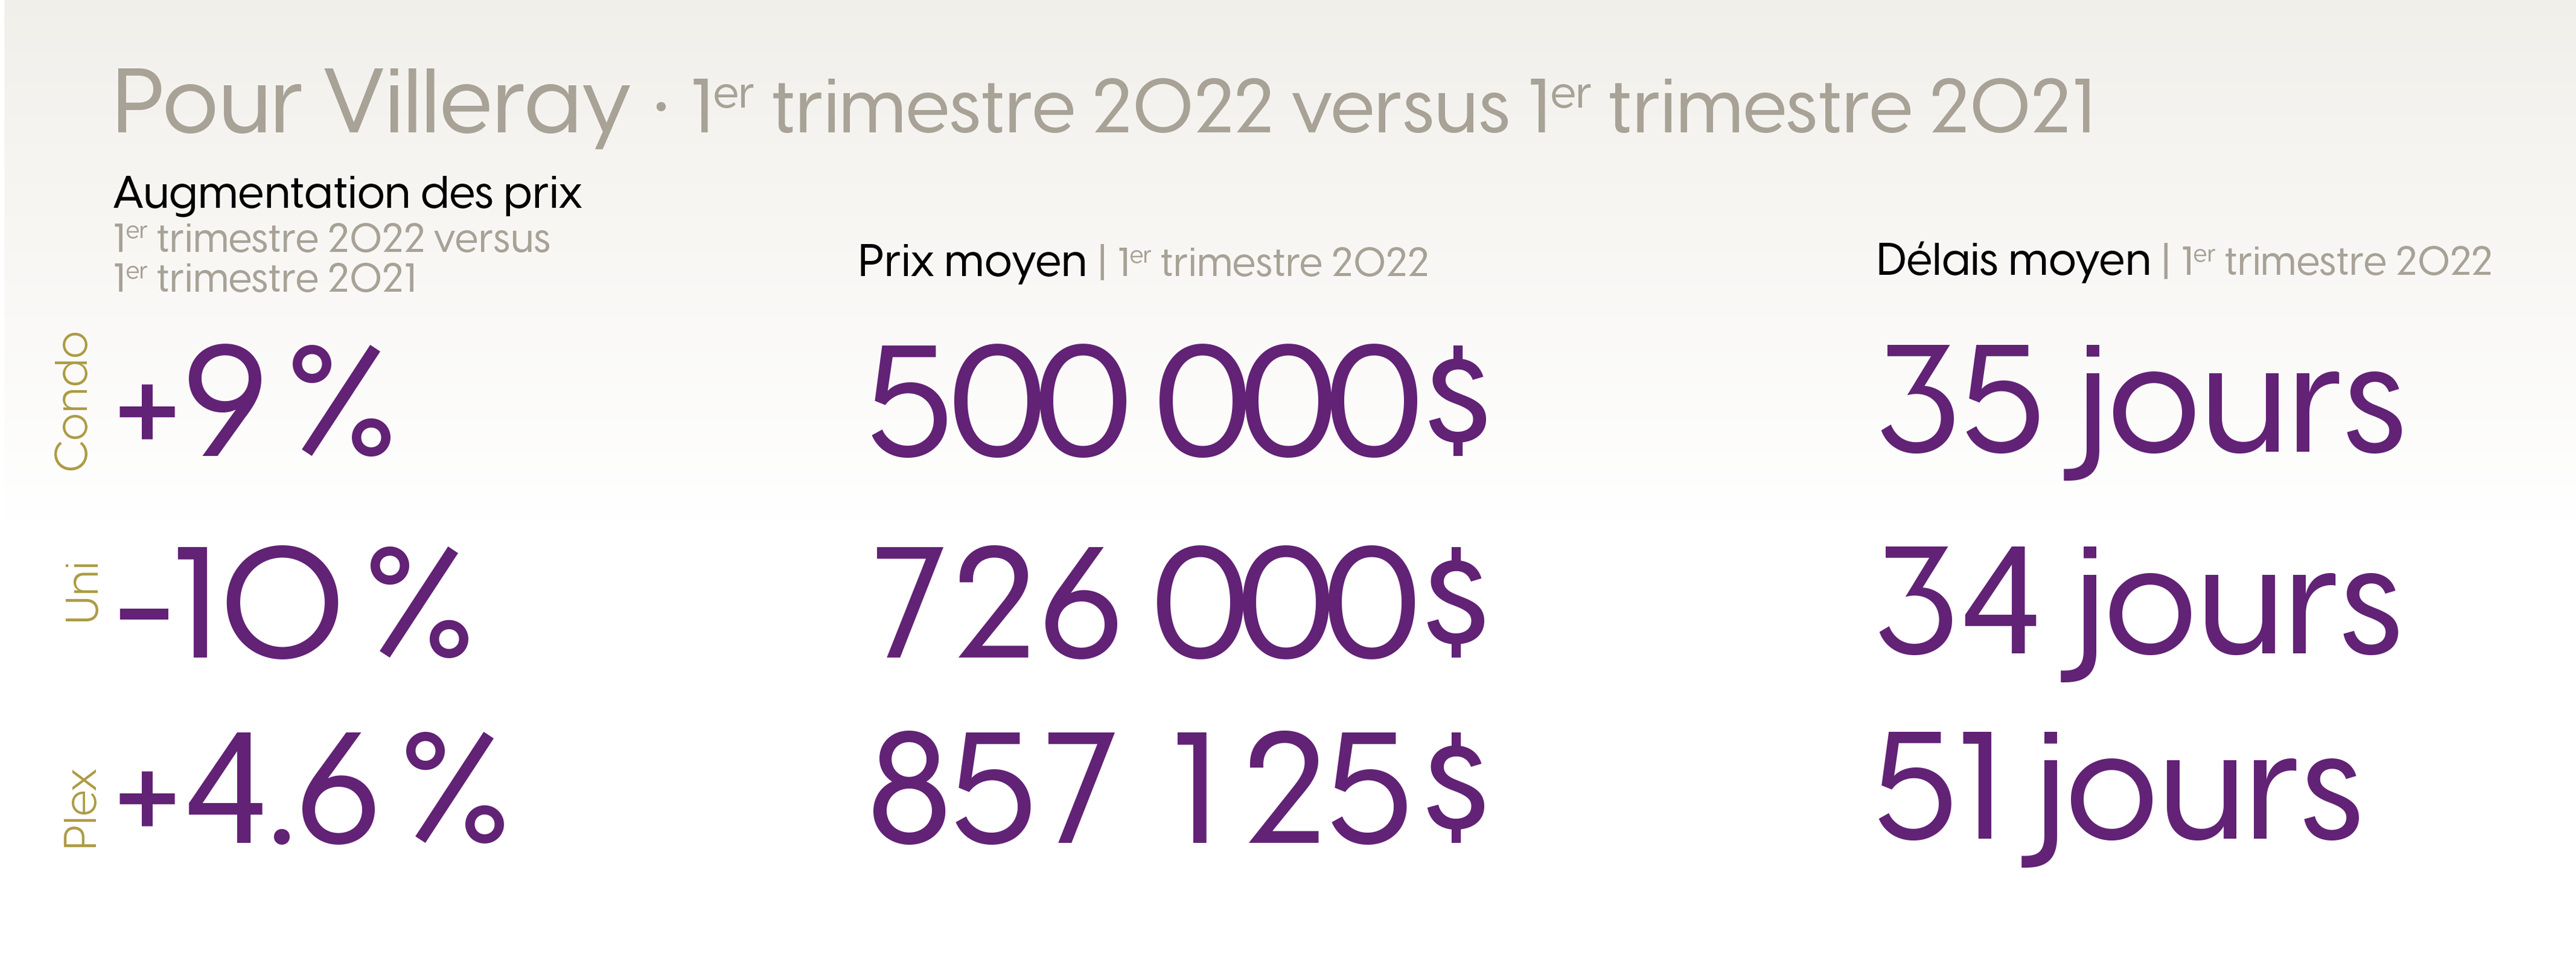 Statistiques pour le premier trimestre du marché immobilier de Villeray 2022 versus 2021